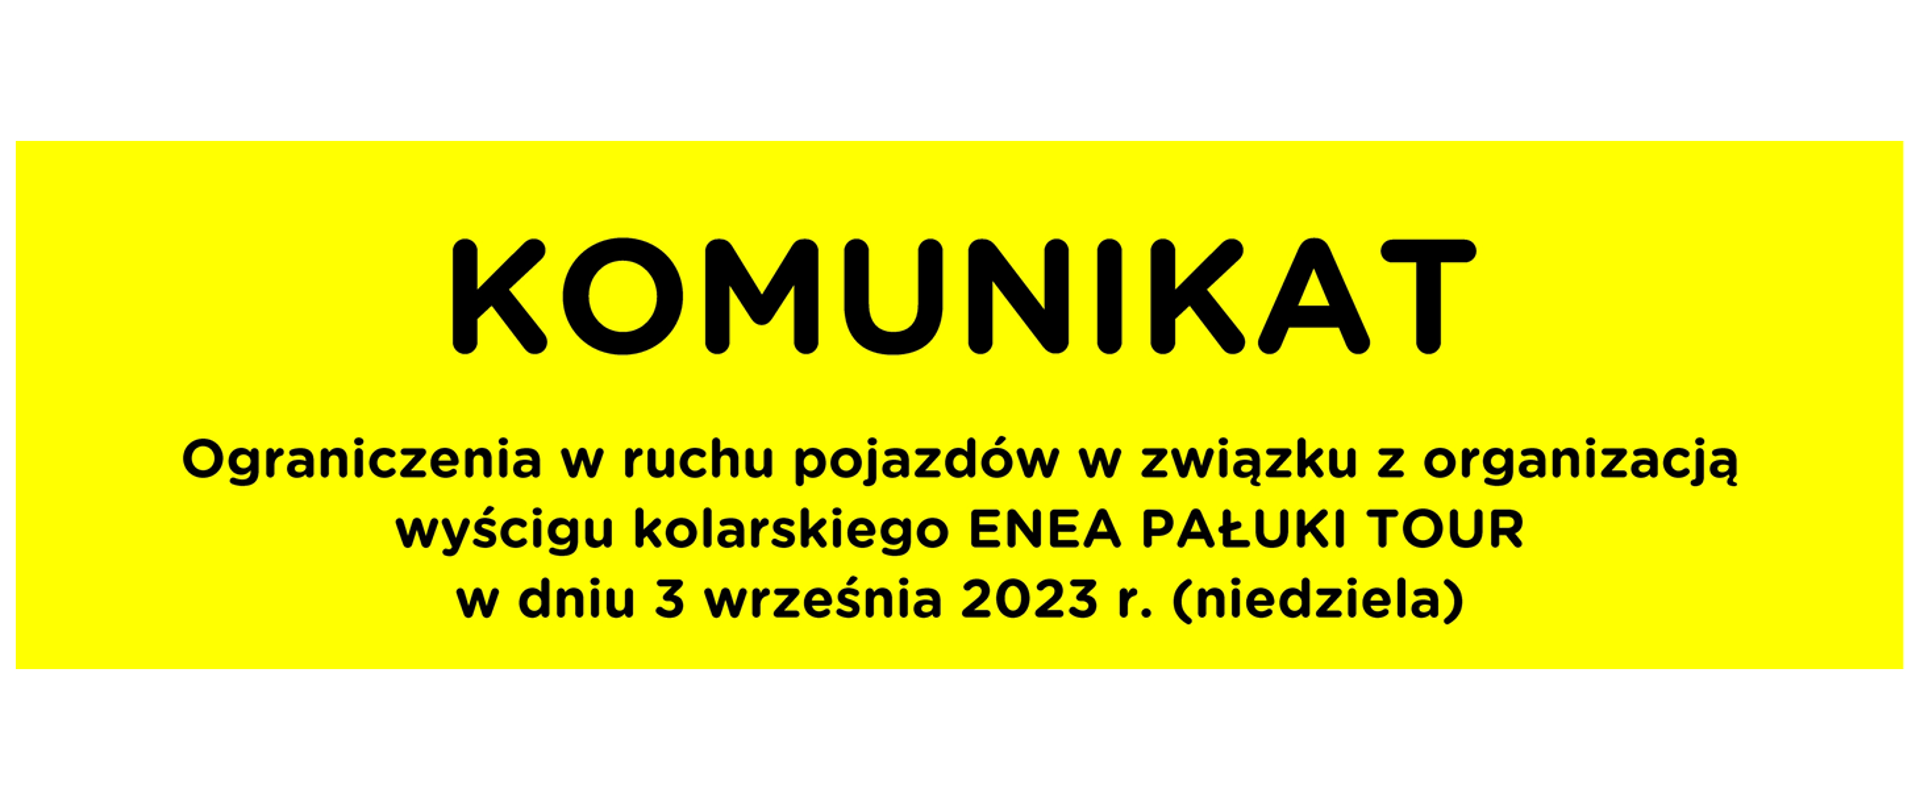 Ograniczenia w ruchu pojazdów w związku z organizacją wyścigu kolarskiego ENEA PAŁUKI TOUR w dniu 3 września 2023 r. (niedziela)